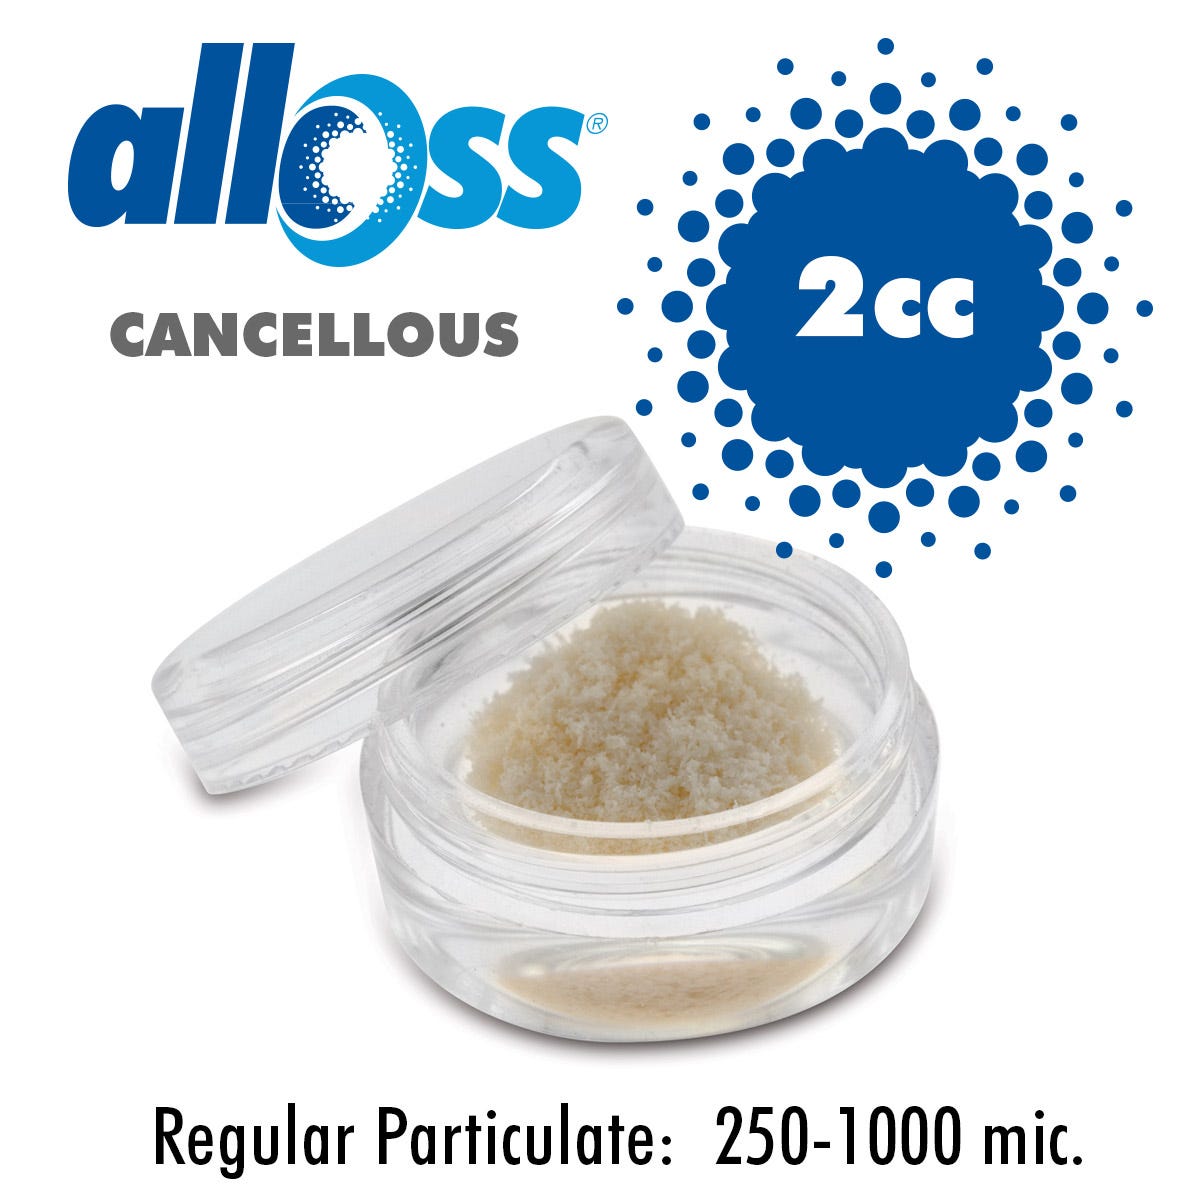 alloOss® Cancellous Particulate 250-1000 um (2.0cc)